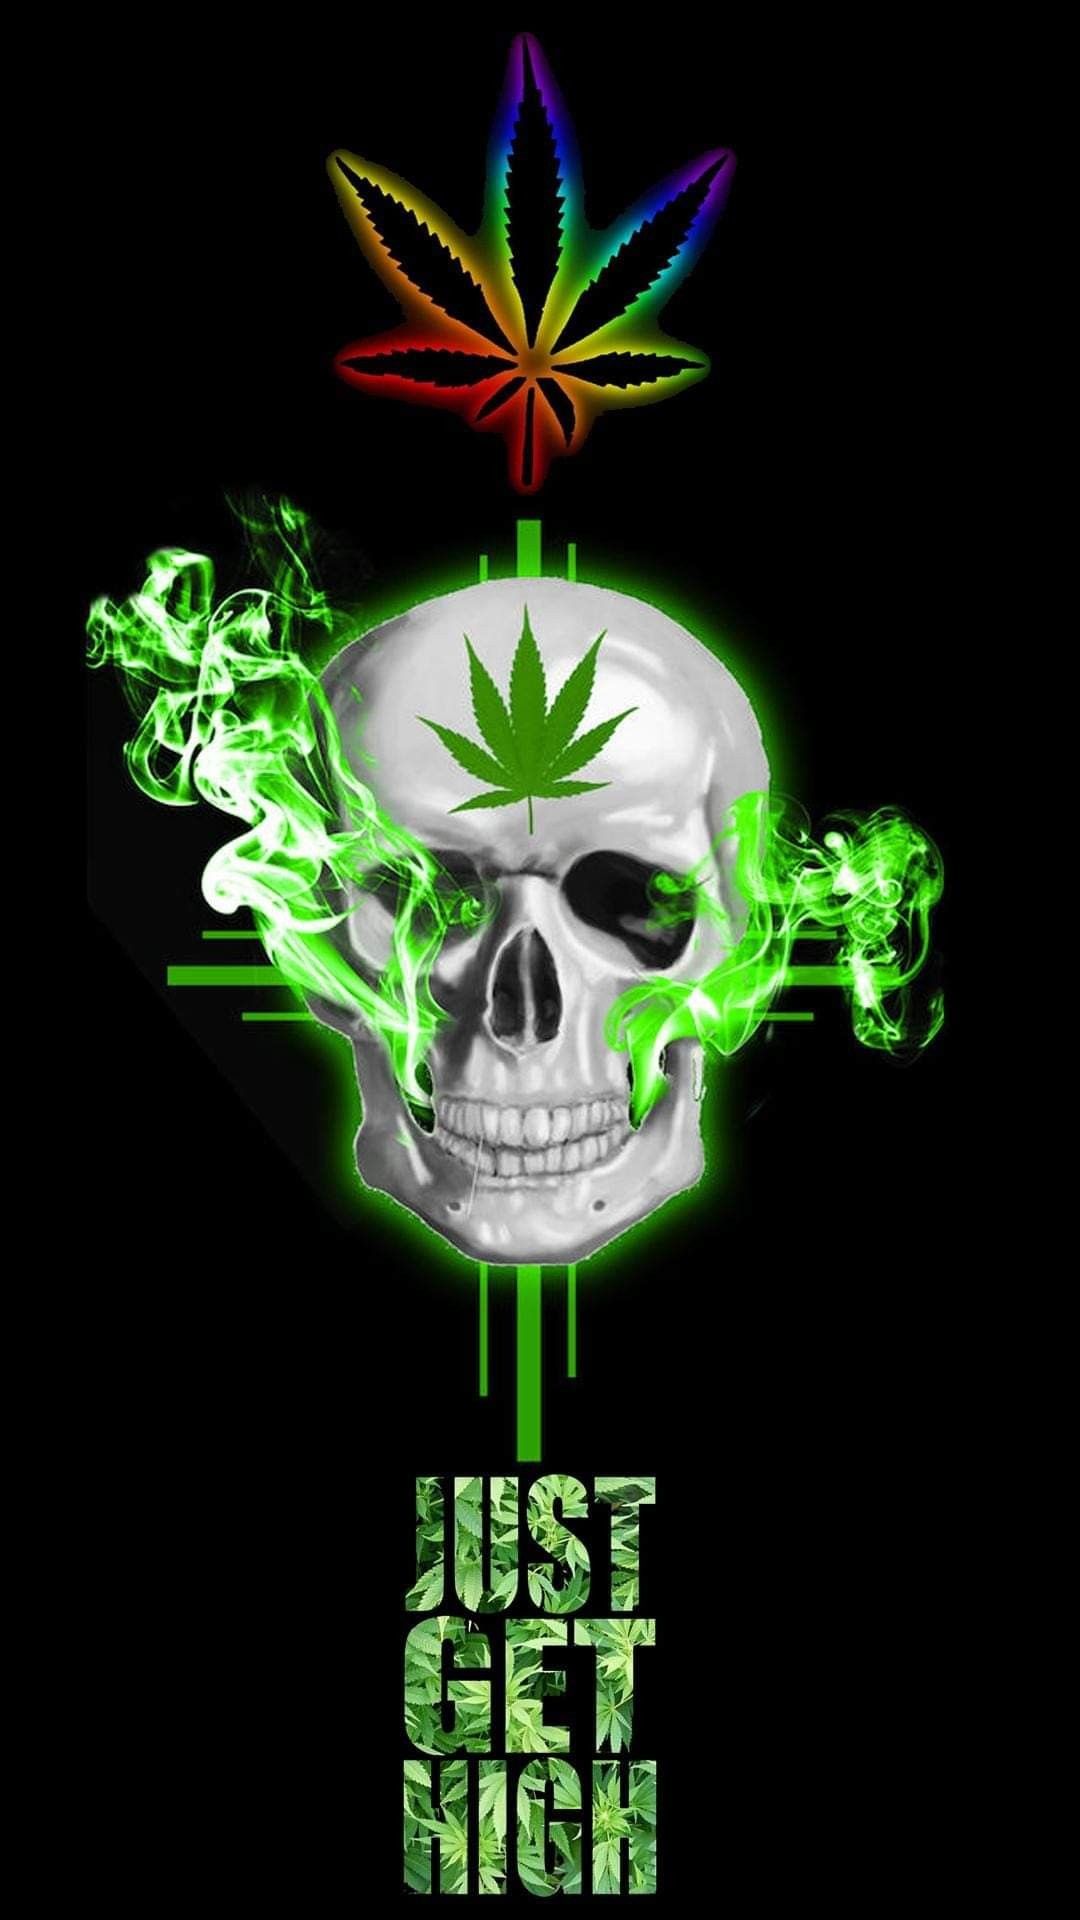 Green Goddess, Weed, Pot, Mary Jane & Marijuana